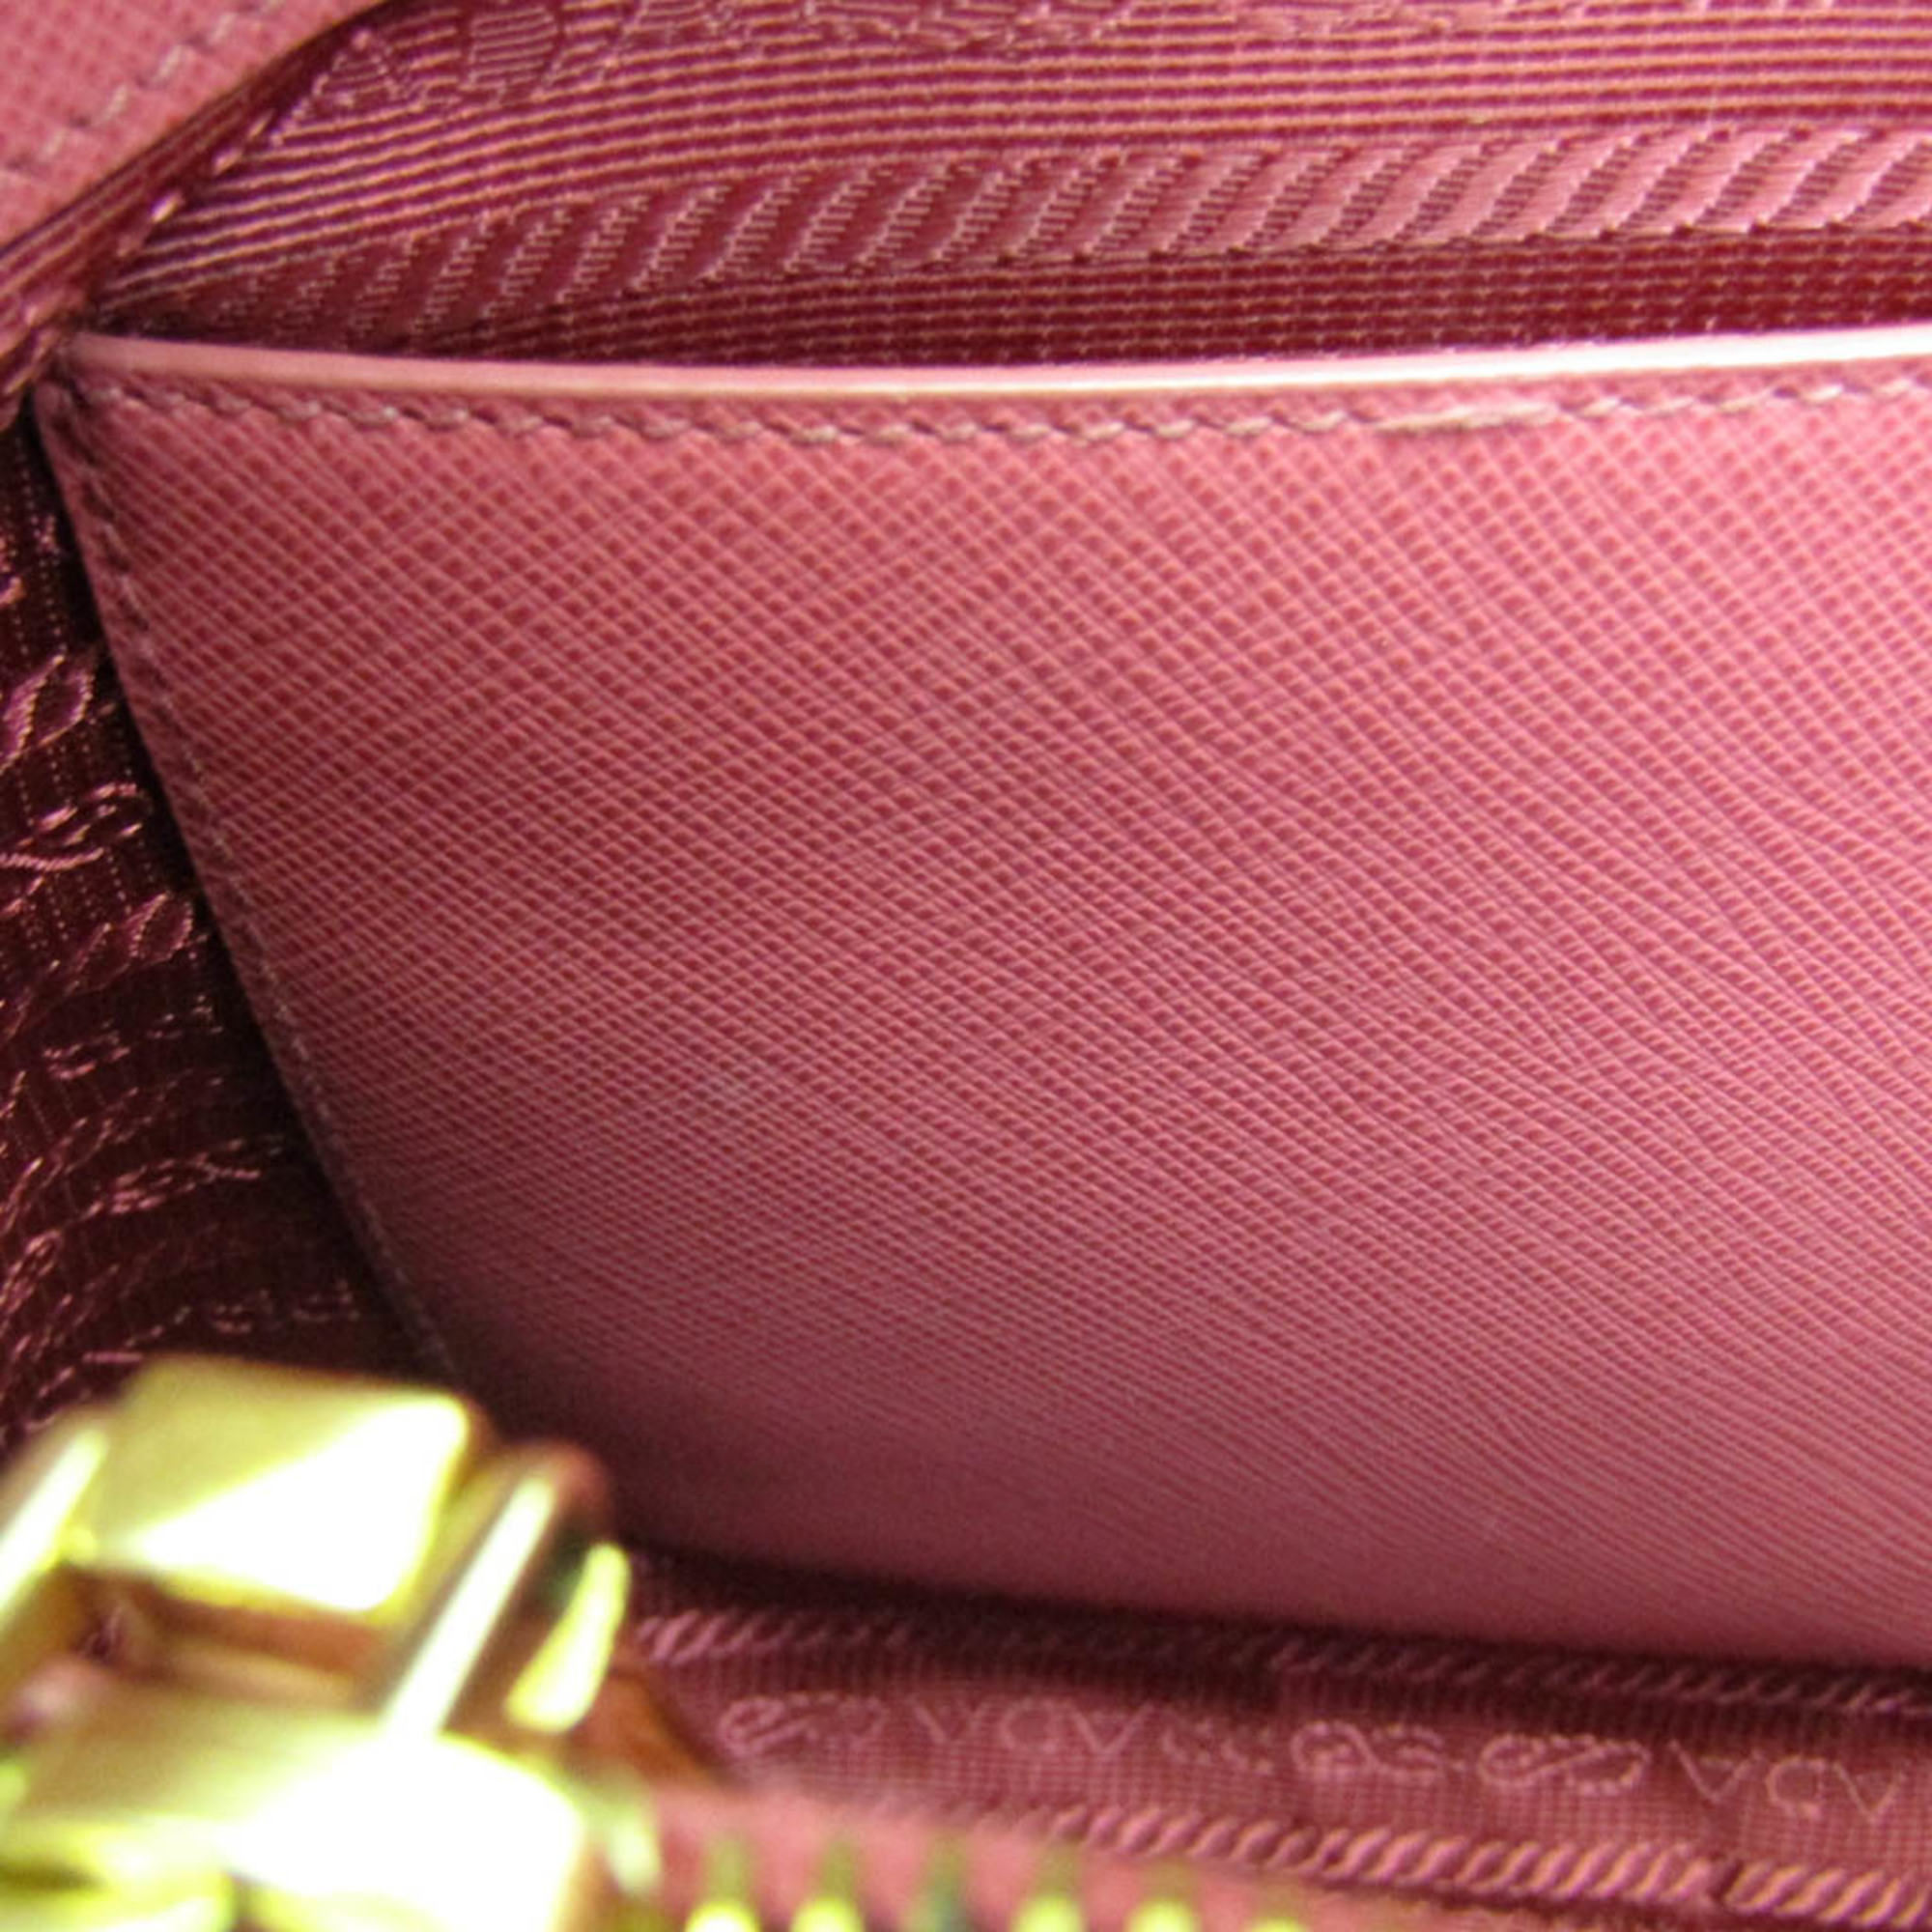 Prada Saffiano BL0837 Women's Saffiano Handbag,Shoulder Bag Pink